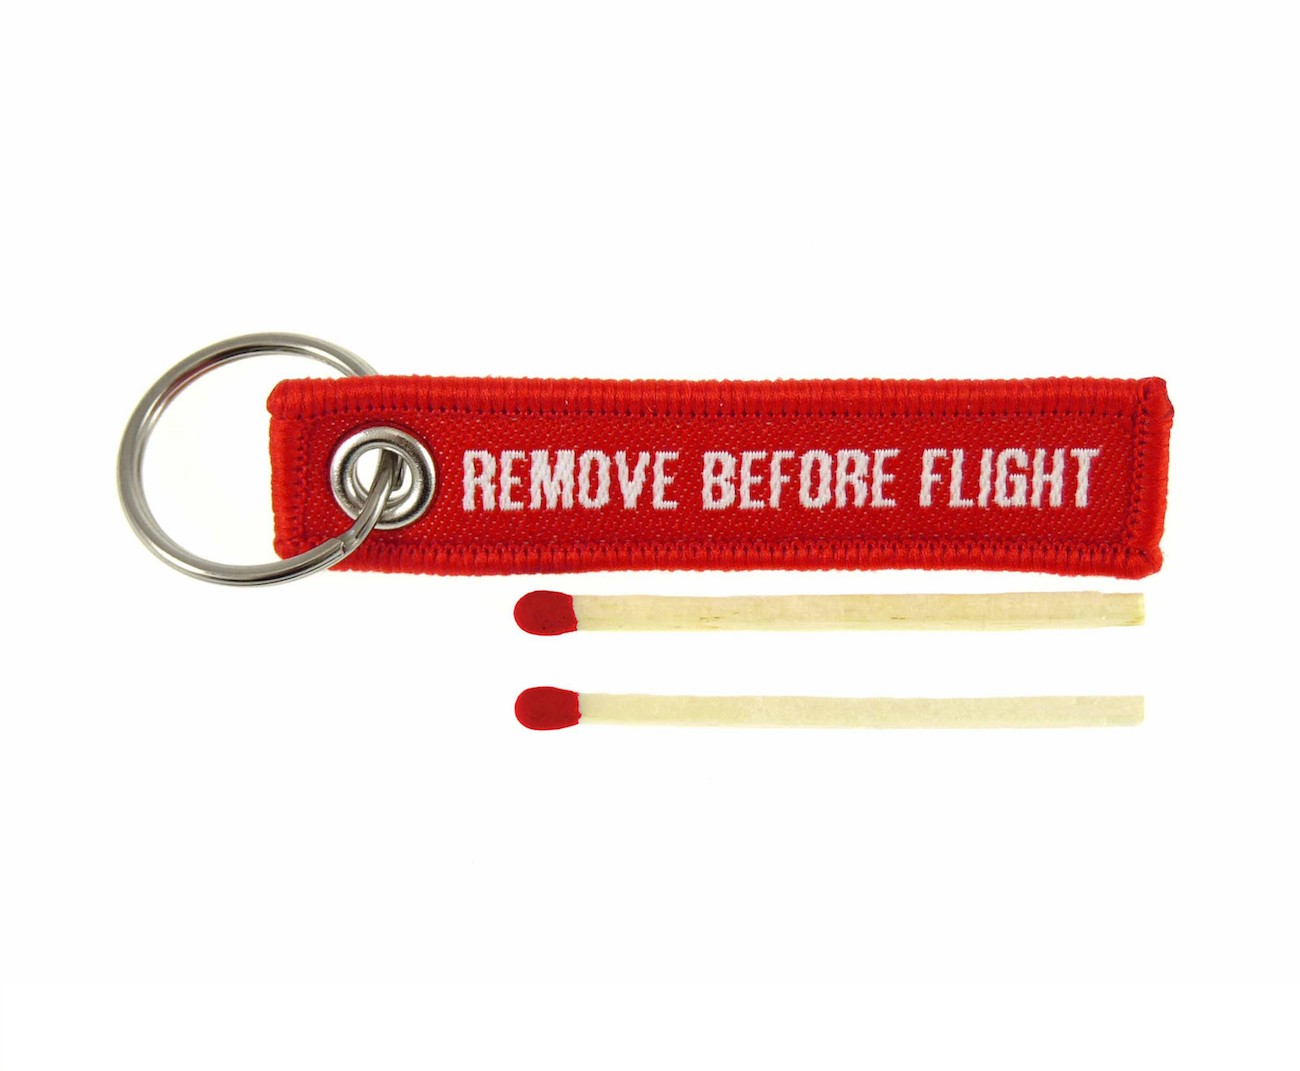 Découvrez notre gamme de remove before flight sur air-collection